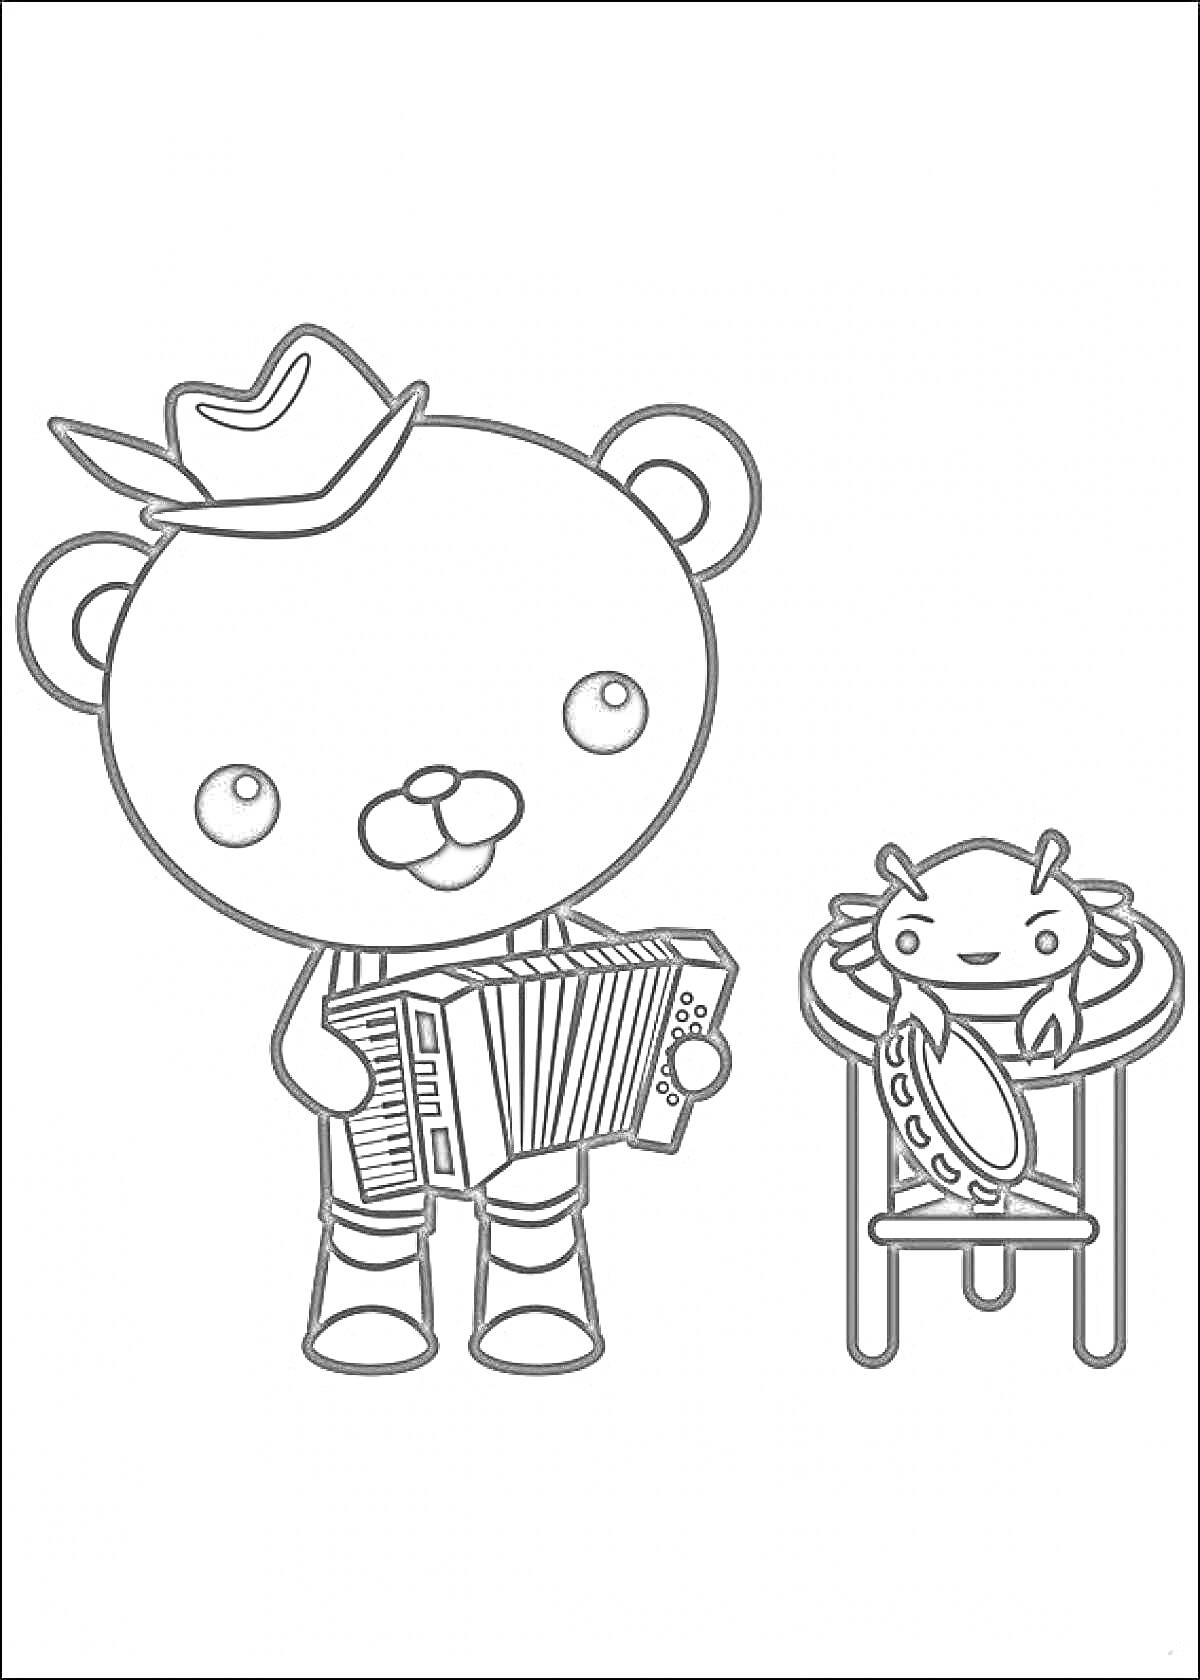 Медведь в шляпе с аккордеоном и краб на табурете с бубном